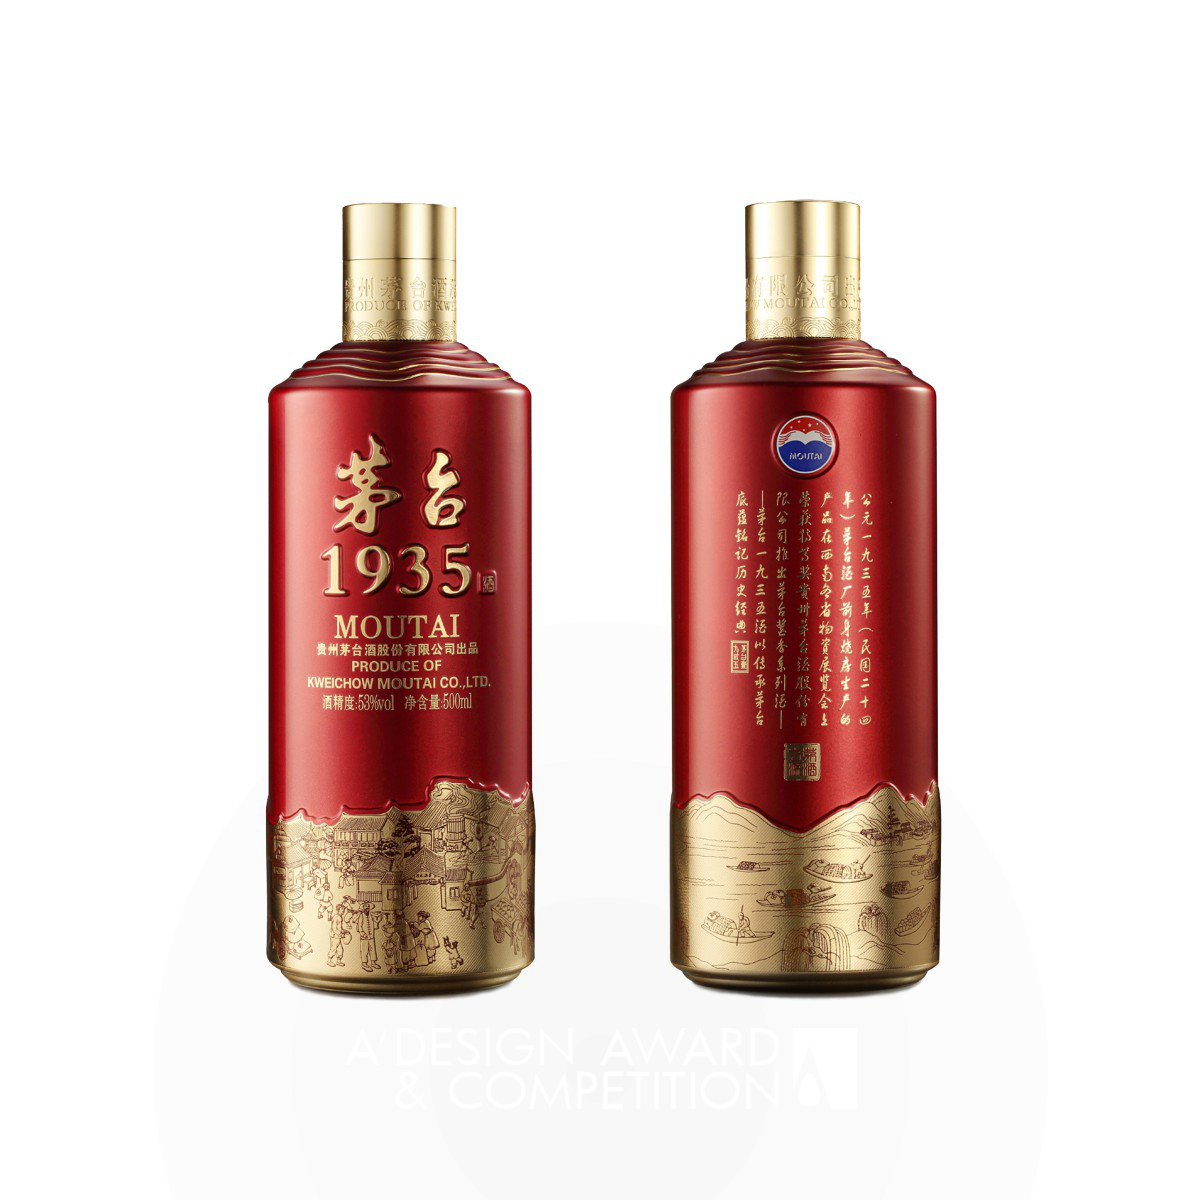 Moutai 1935 Liquor Packaging by Chengdu Wanjiazu Technology Co   Ltd